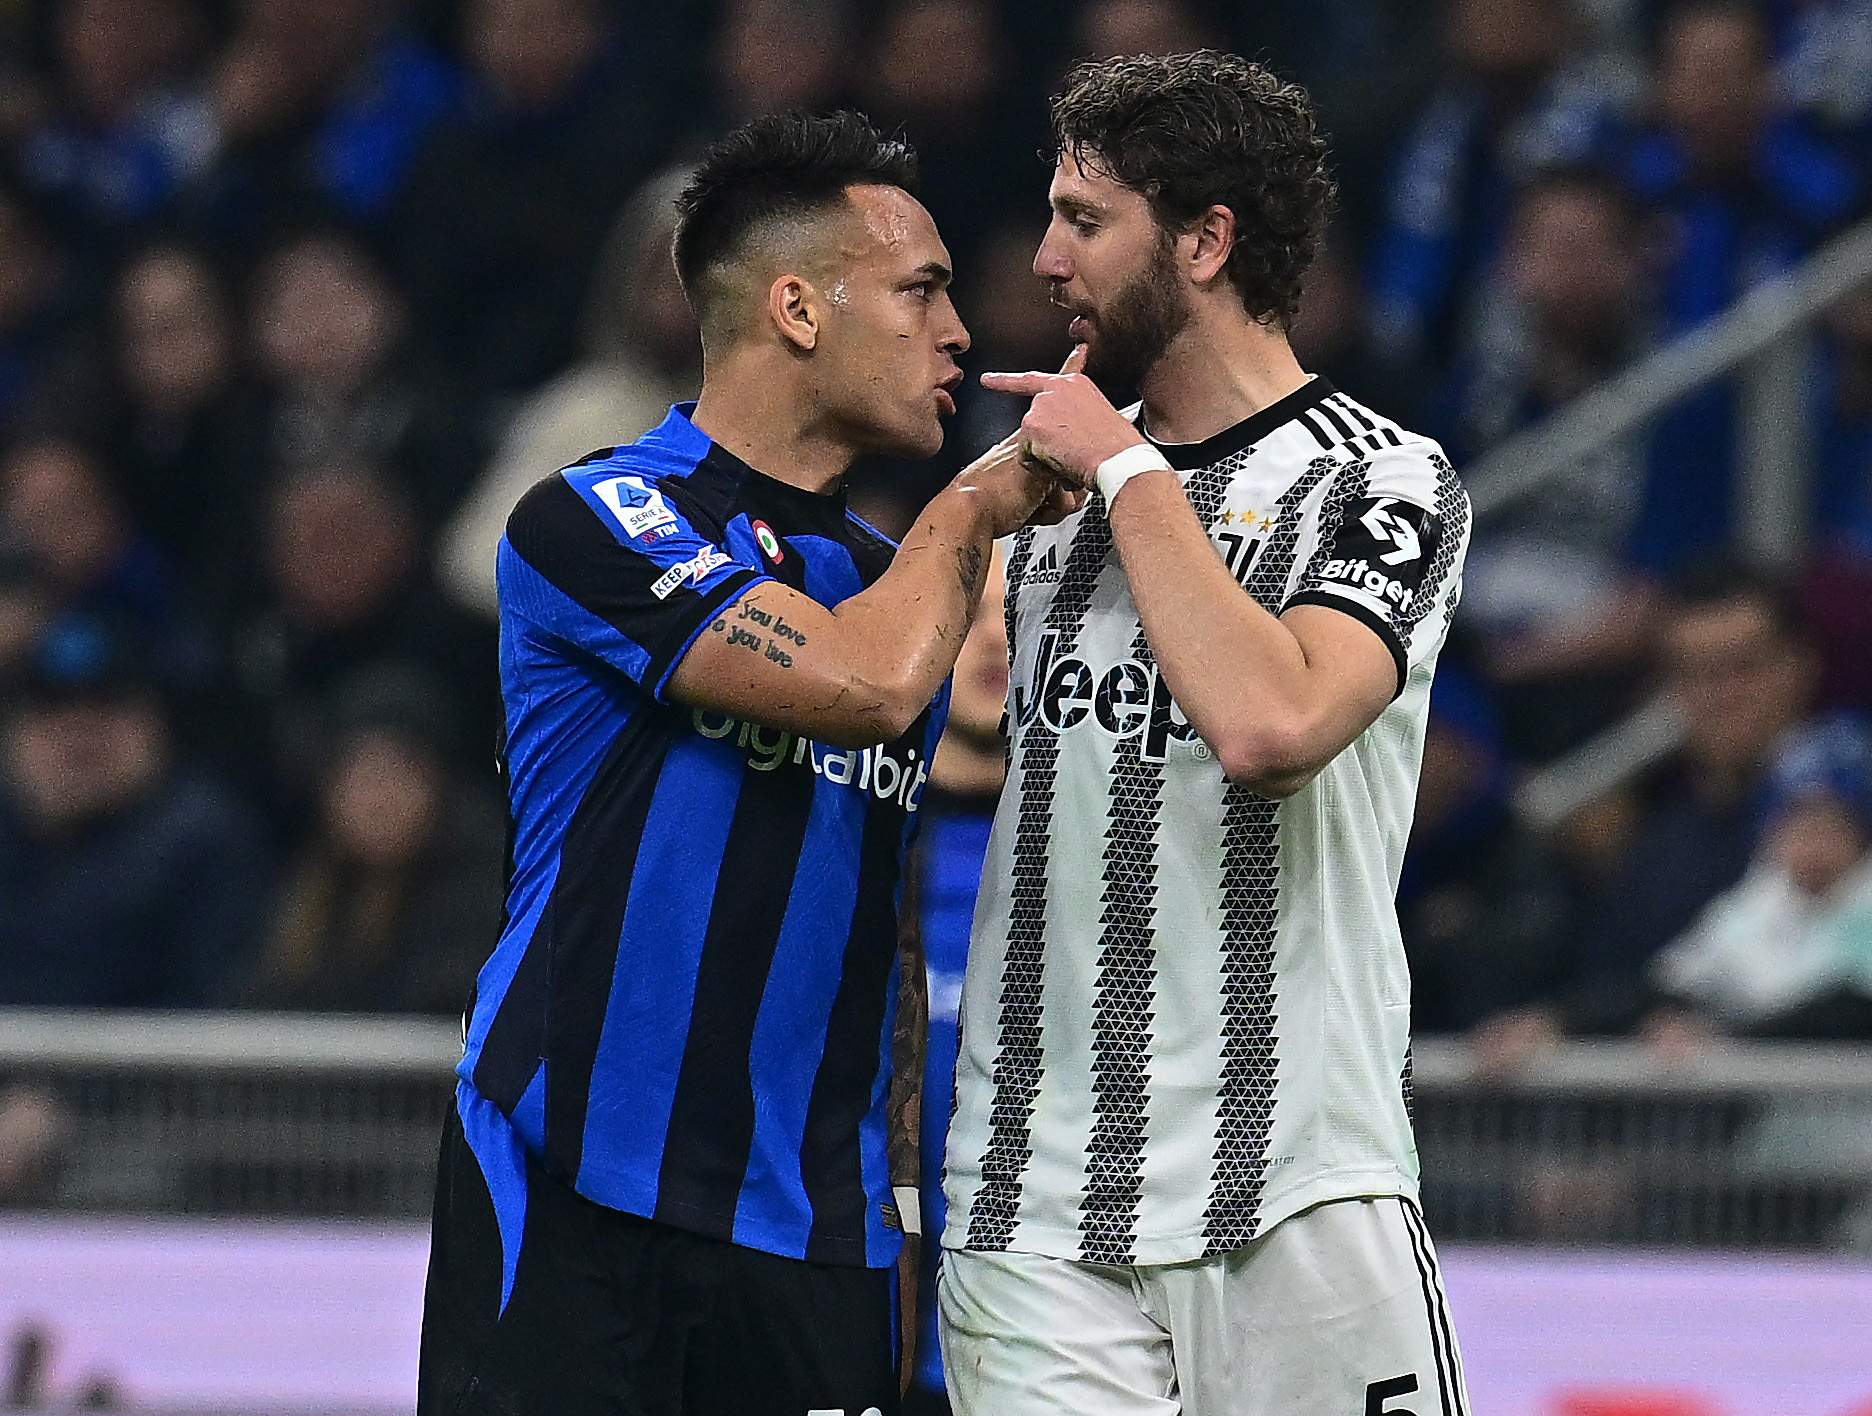 L'Inter-Juve cara a cara per l'Scudetto: les probabilitats després de la 12a jornada